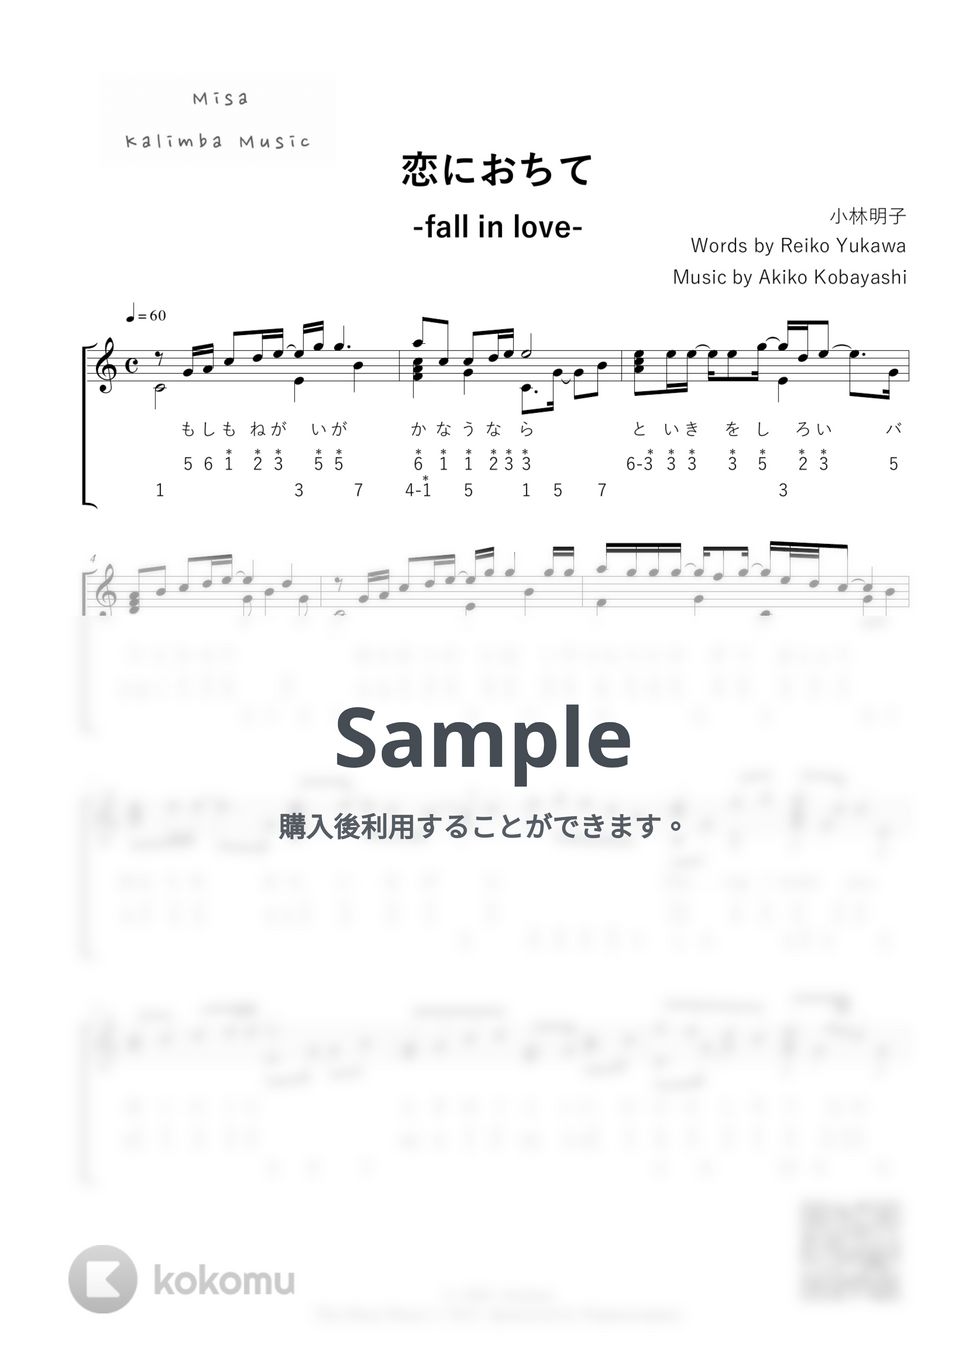 小林明子 - 恋におちて-Fall in love- / 数字表記 / 17音カリンバ (歌詞付き/ 模範演奏付き) by Misa / Kalimba Music